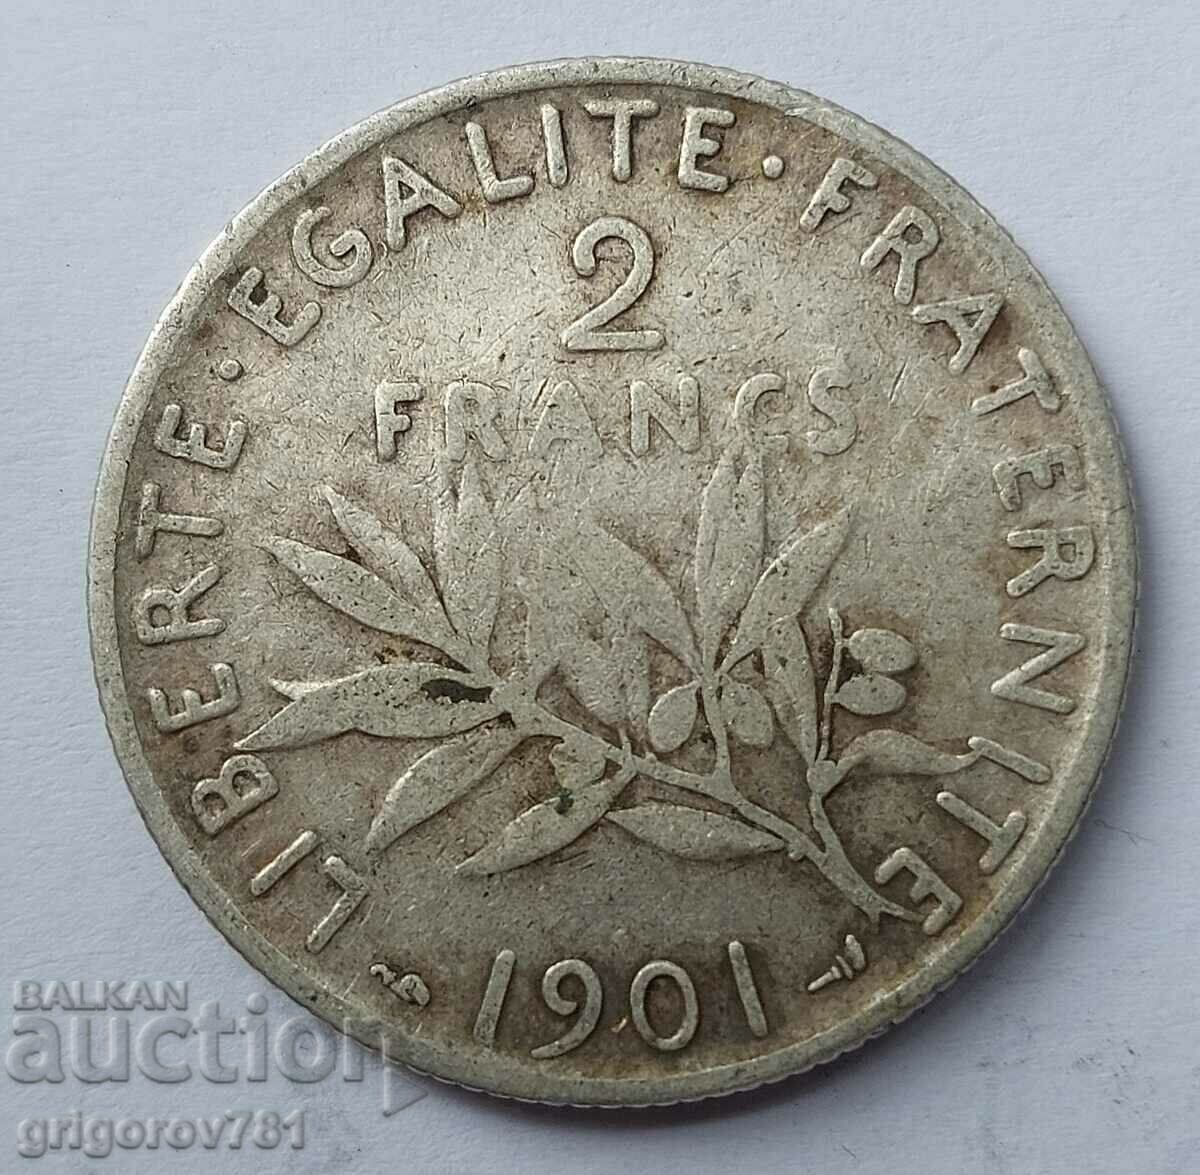 Ασημένιο 2 φράγκα Γαλλία 1901 - ασημένιο νόμισμα №20